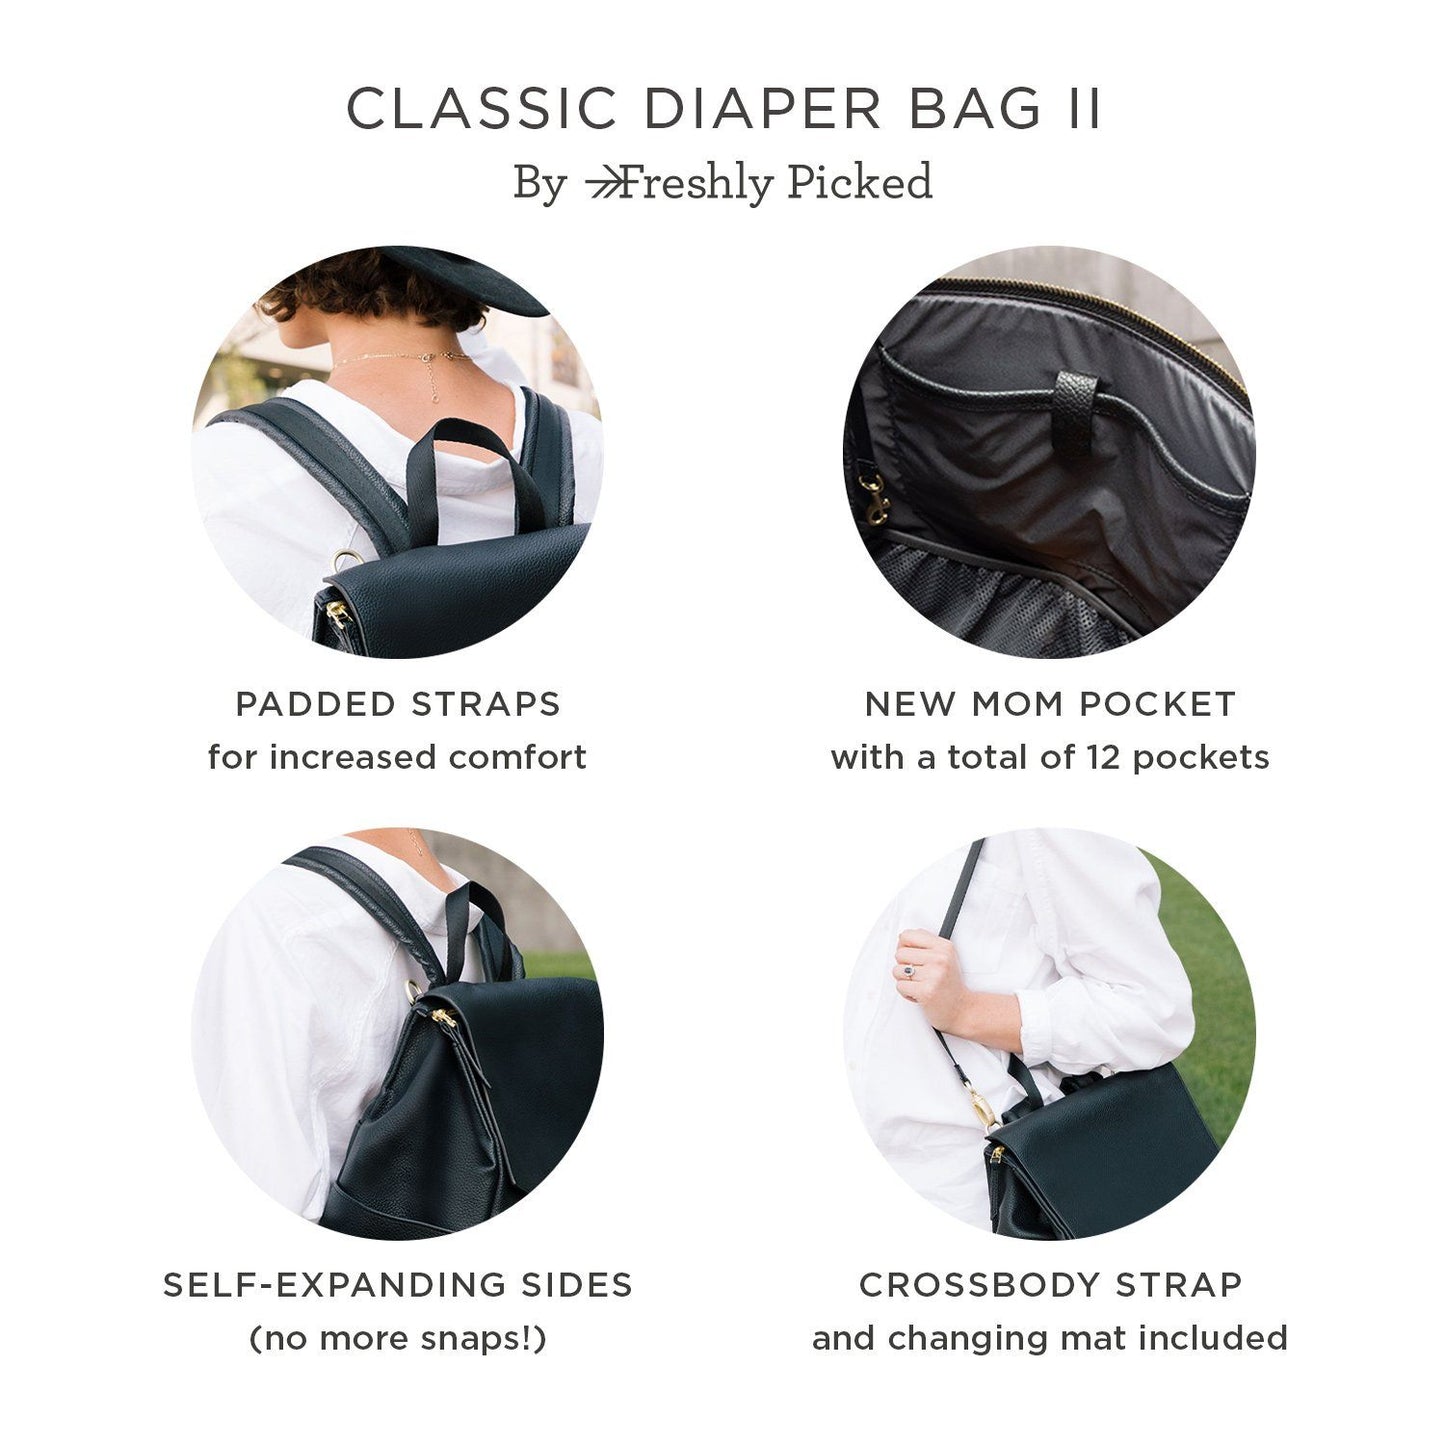 Stone Classic Diaper Bag II Classic Diaper Bag II Diaper Bag 